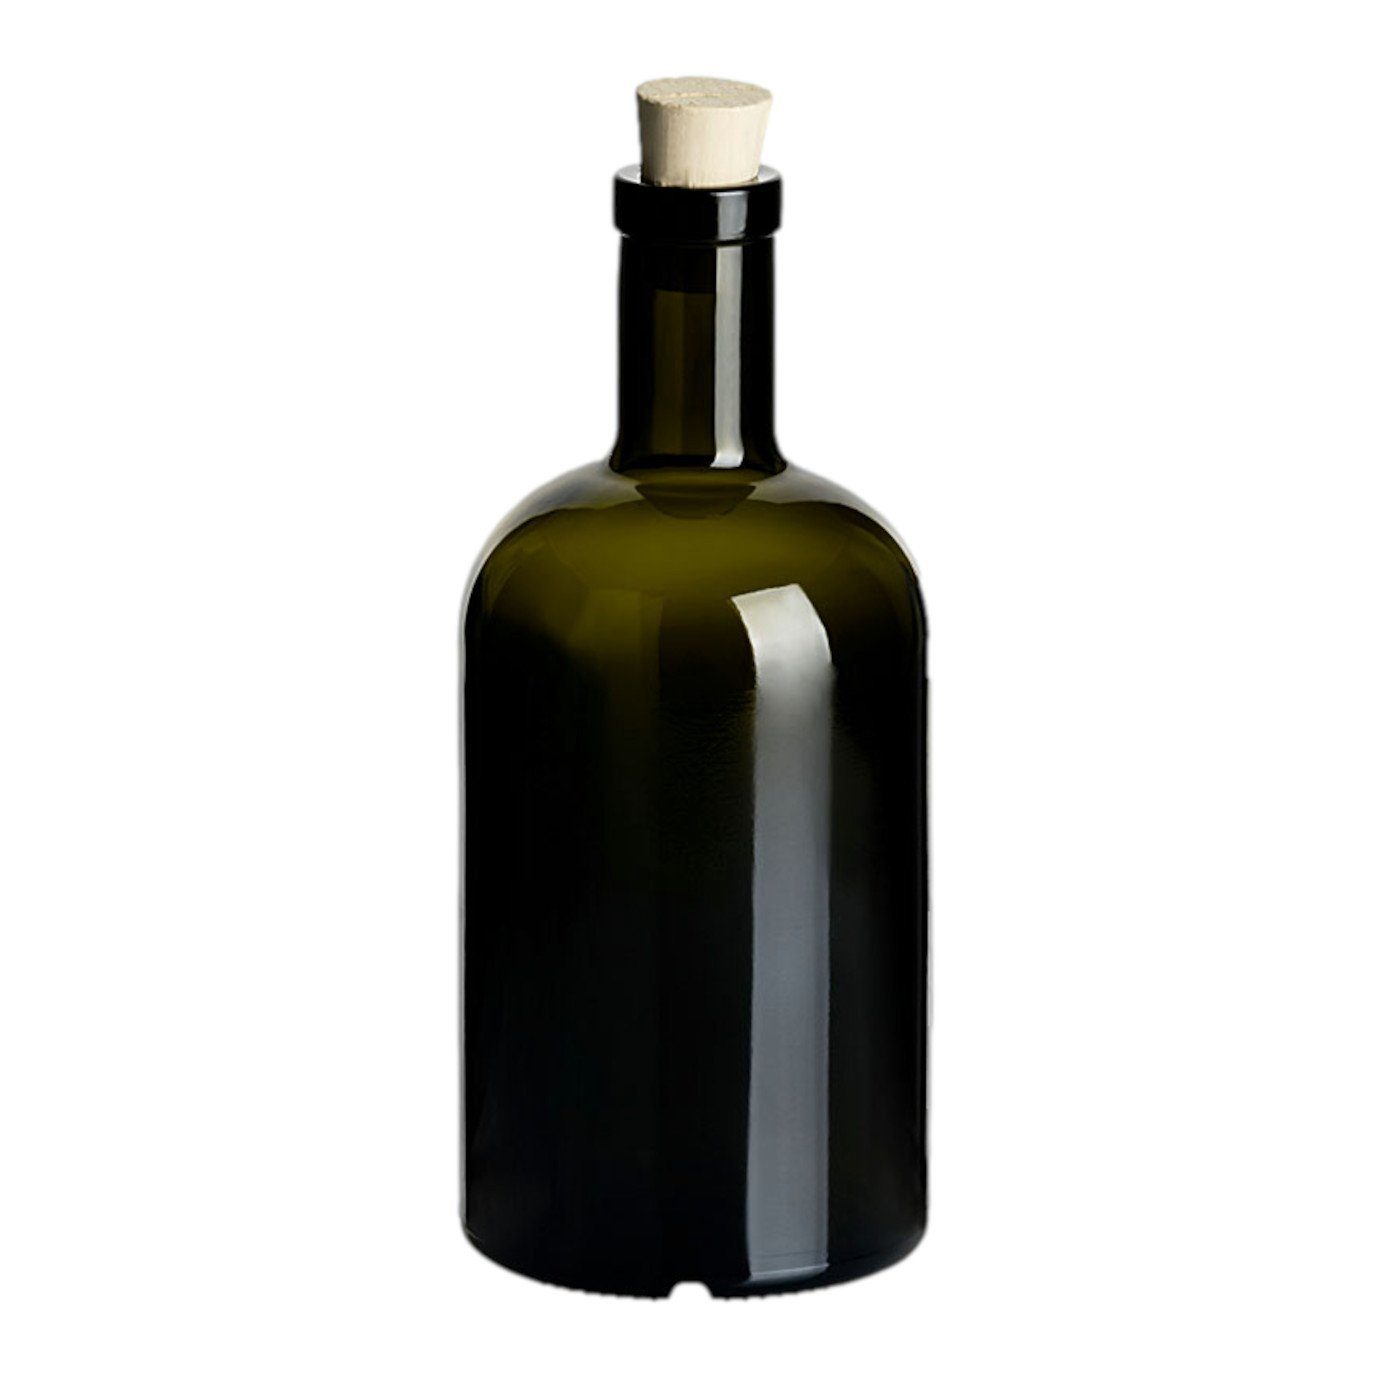 “Klassik” Trinkflasche 6er Spitzkorken gouveo Glas, Dunkelgrün-Spitzkorken 500ml, Glasflaschen Set mit Korken Flasche aus Antik, Runde -